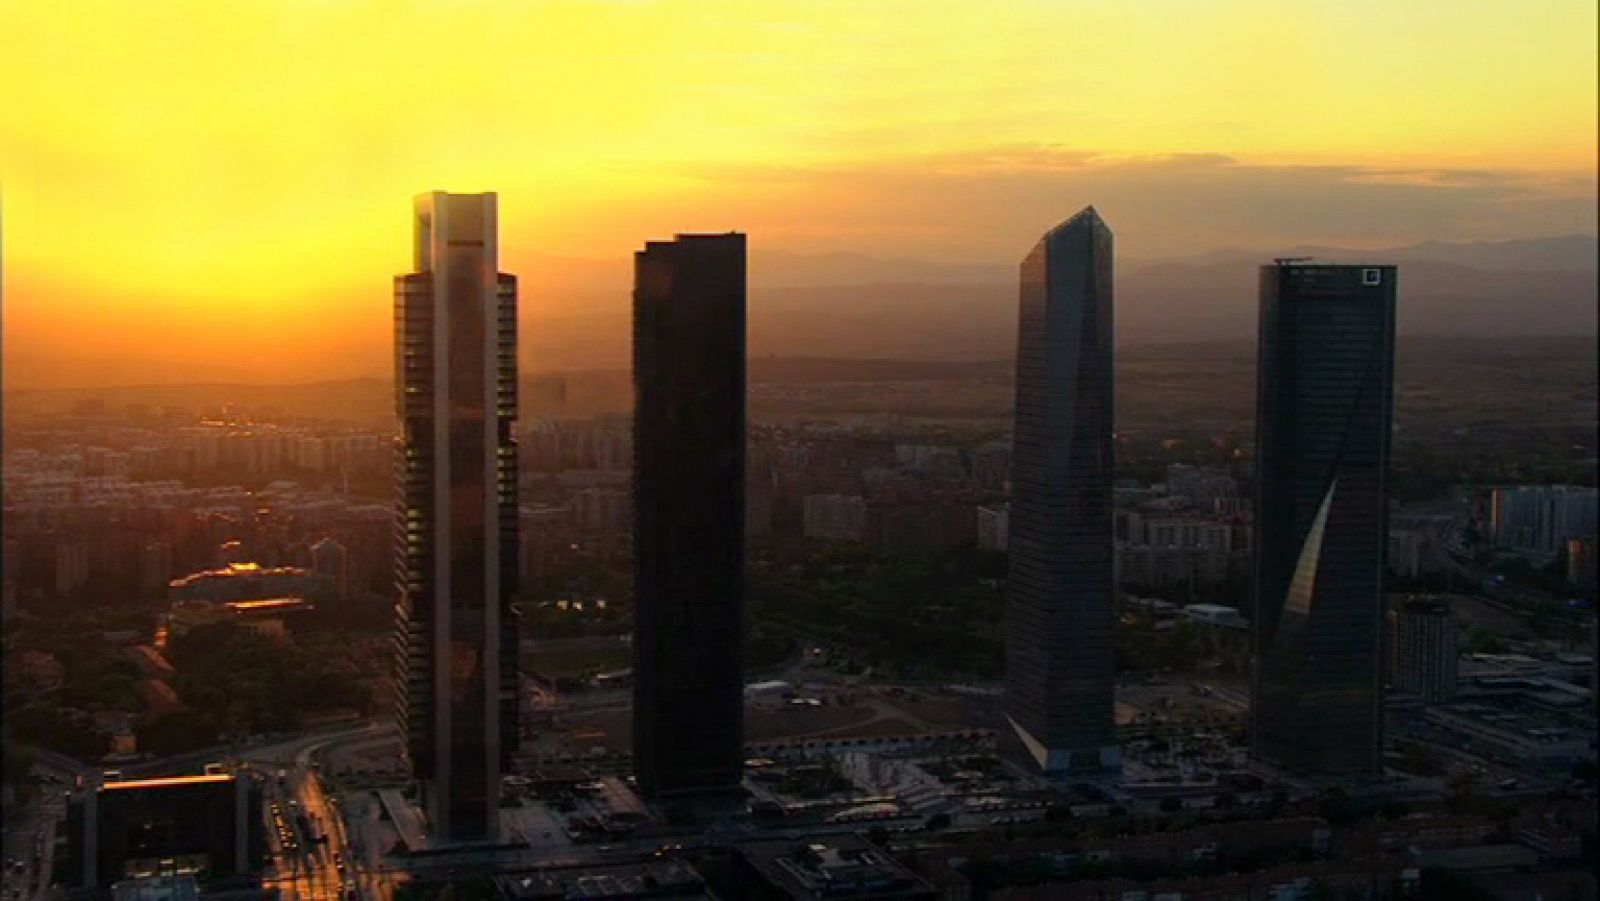 España a ras de cielo - ¿Qué ciudades consumen más luz?